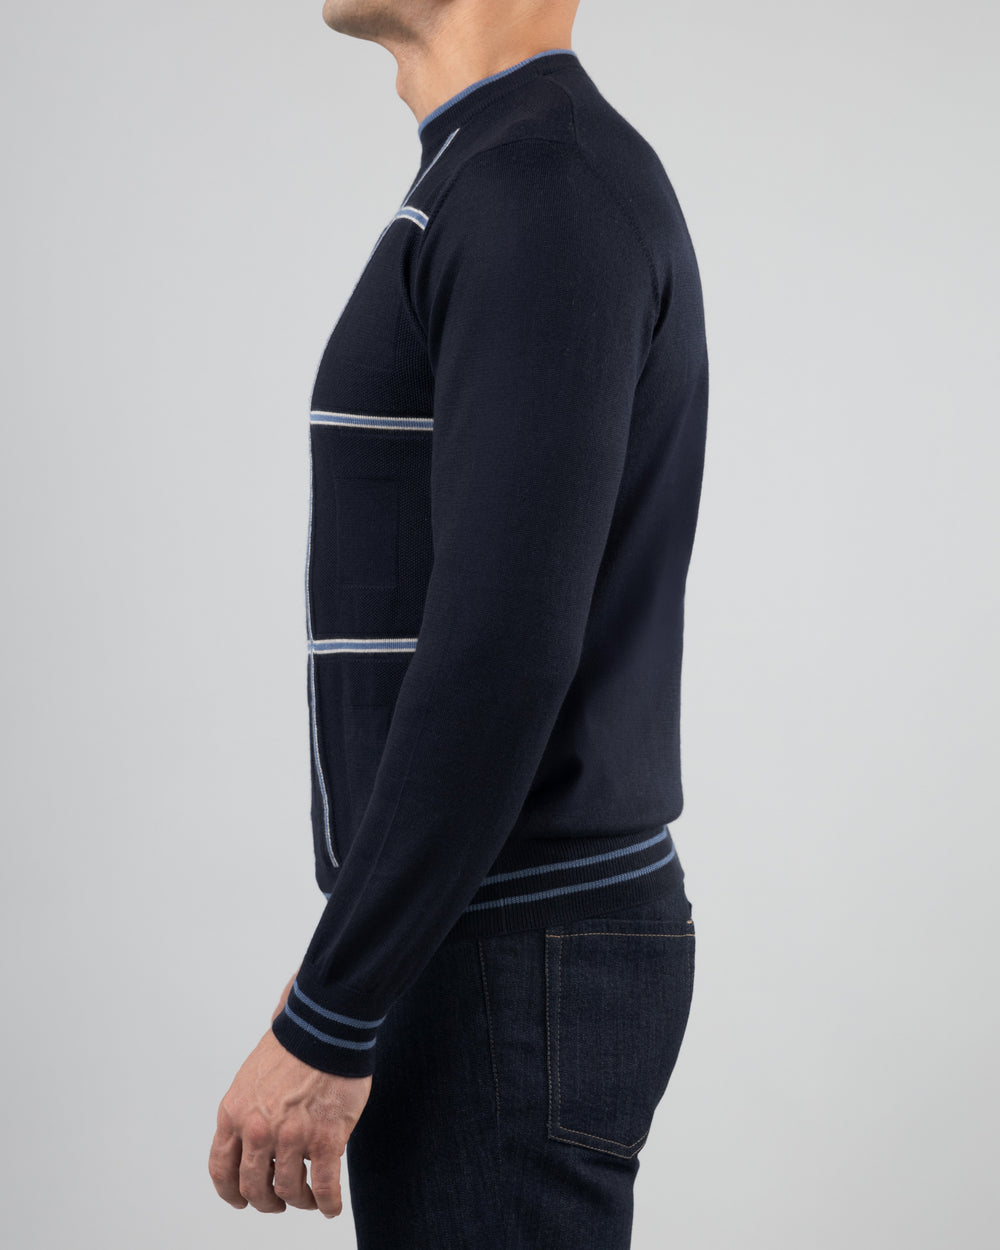 Firn Intarsia Sweater in Cashmere and Silk, Medium Blue